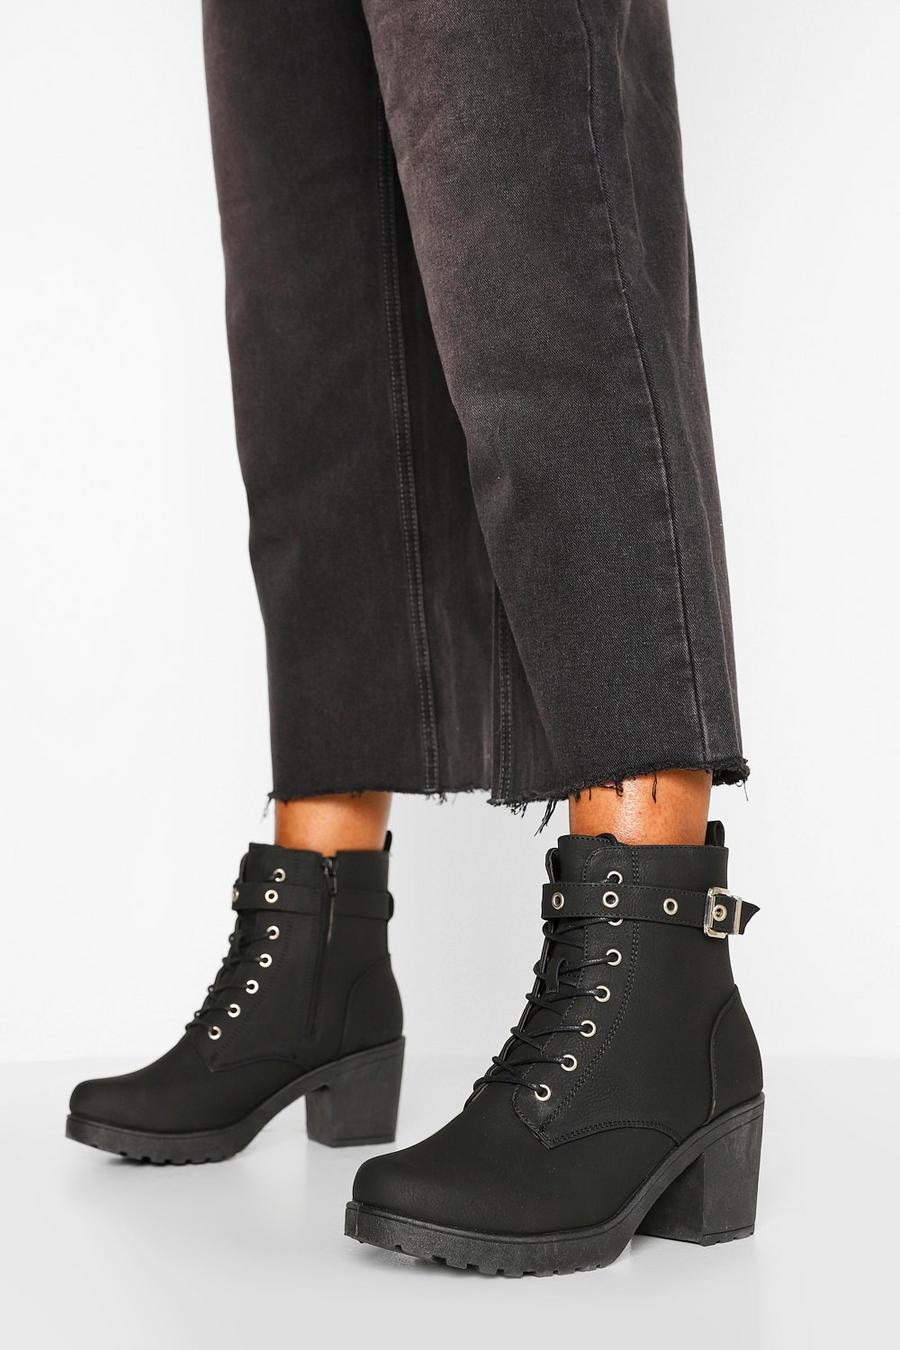 Scarponcini a calzata ampia con suola spessa, lacci e fibbia, Nero negro